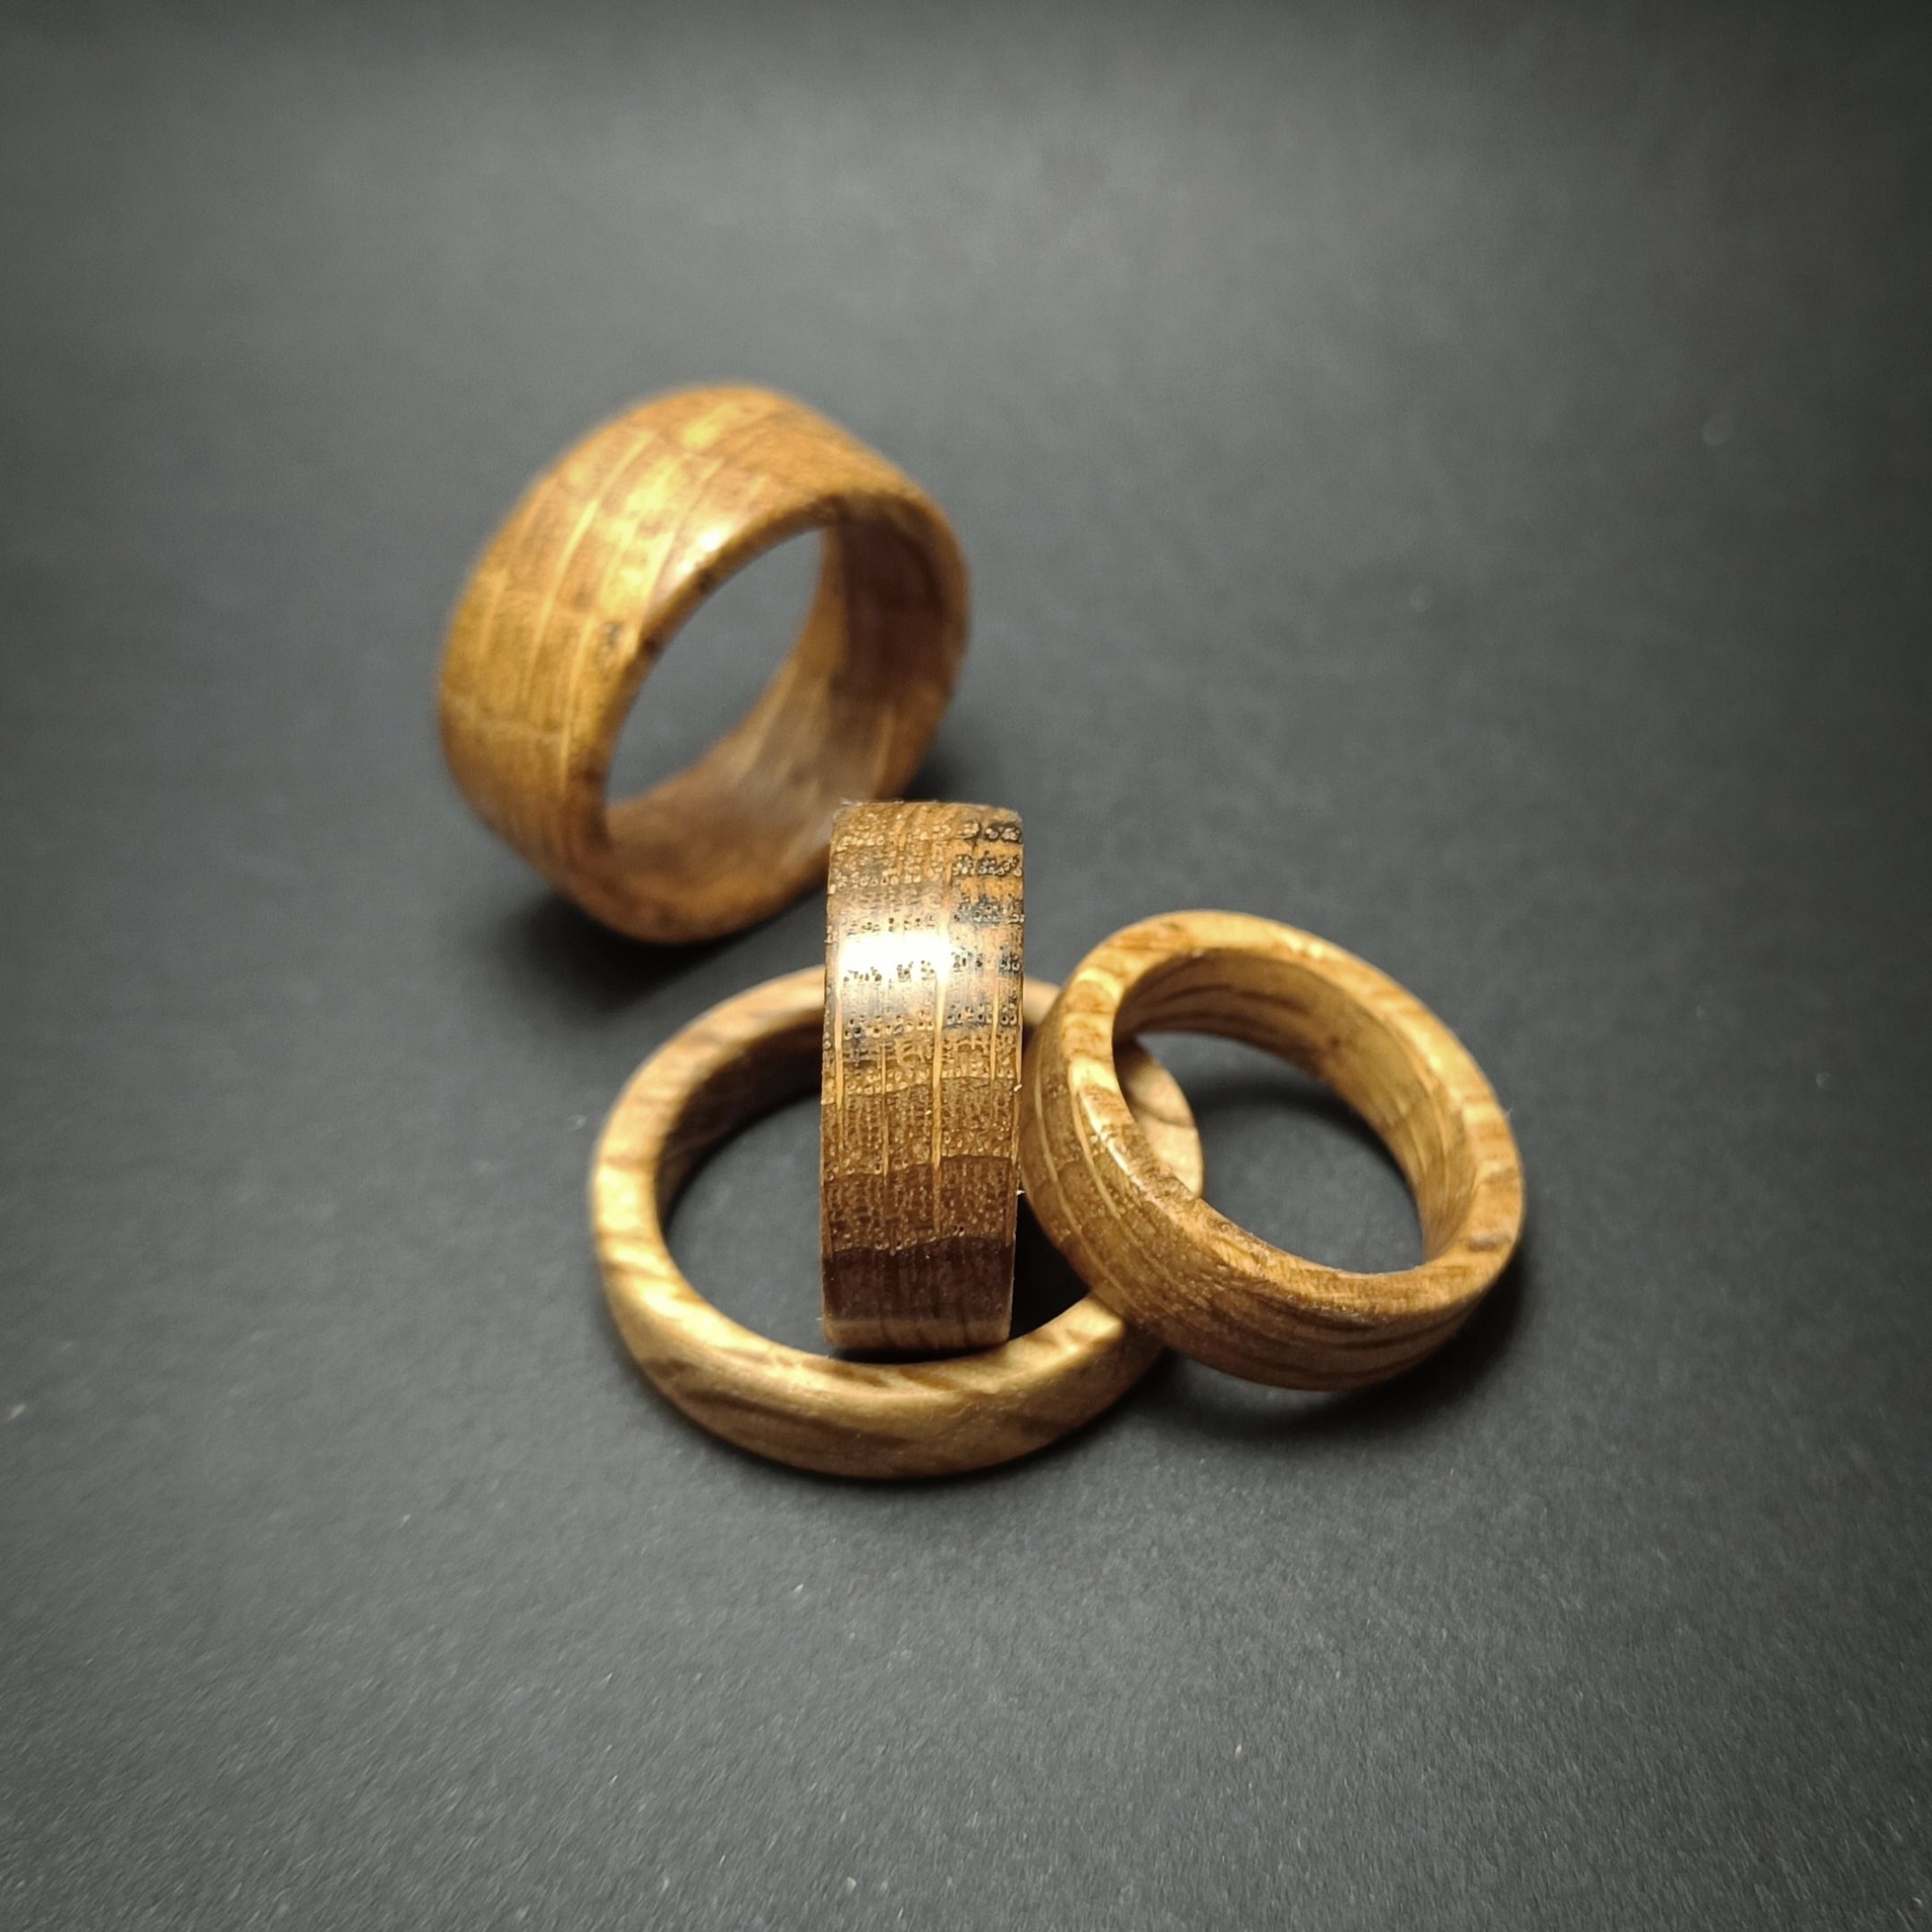 Wooden Rings, Macrame, Wooden Craft Rings, Jewellery Rings